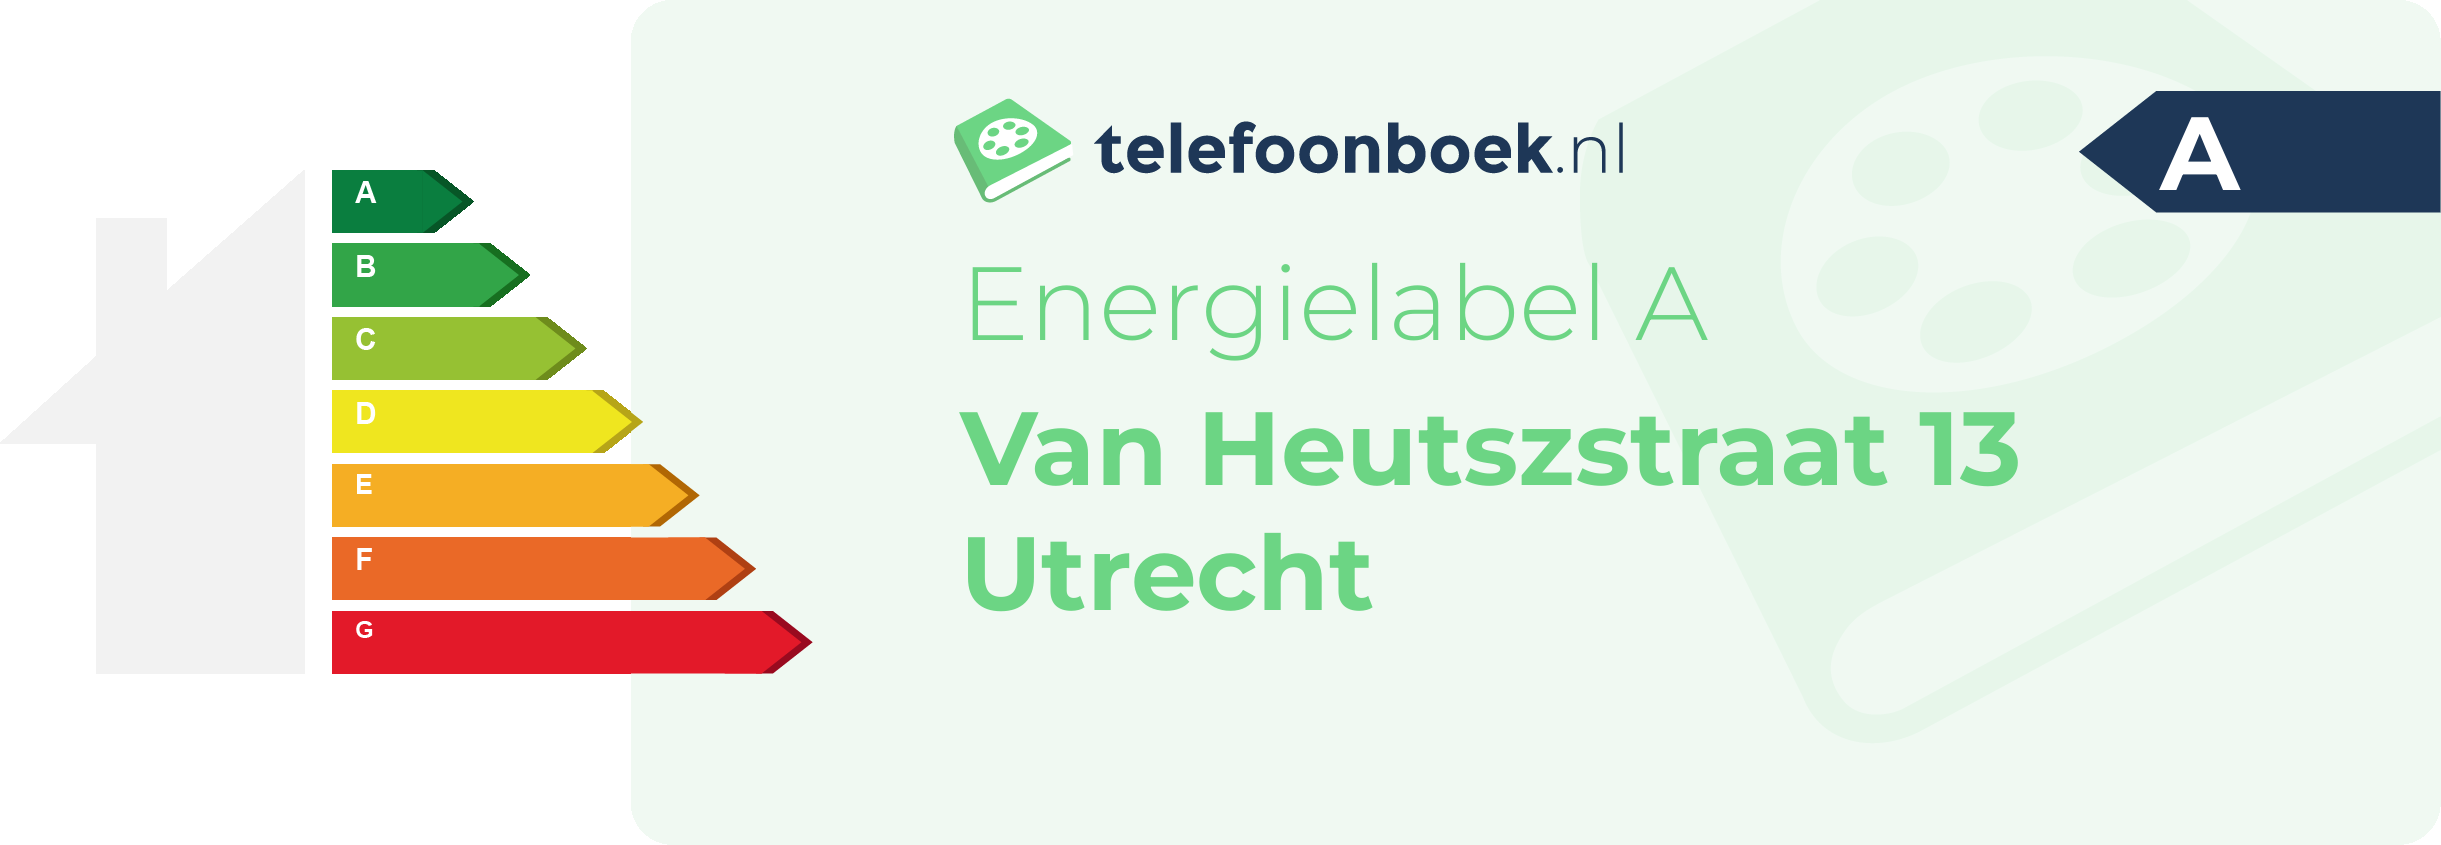 Energielabel Van Heutszstraat 13 Utrecht